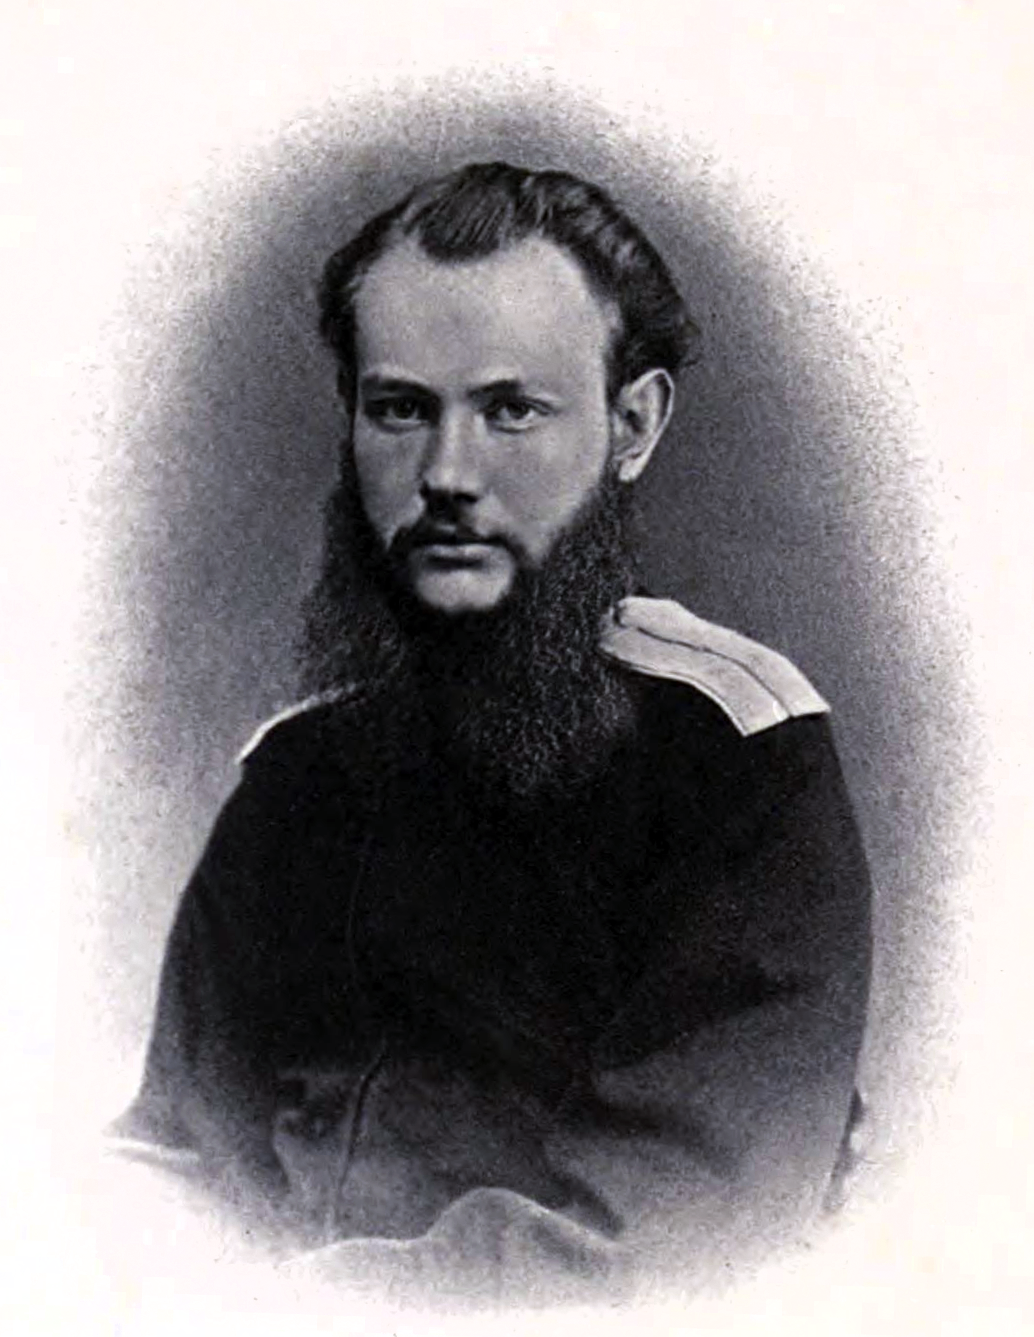 Peter_Kropotkin_1864.png